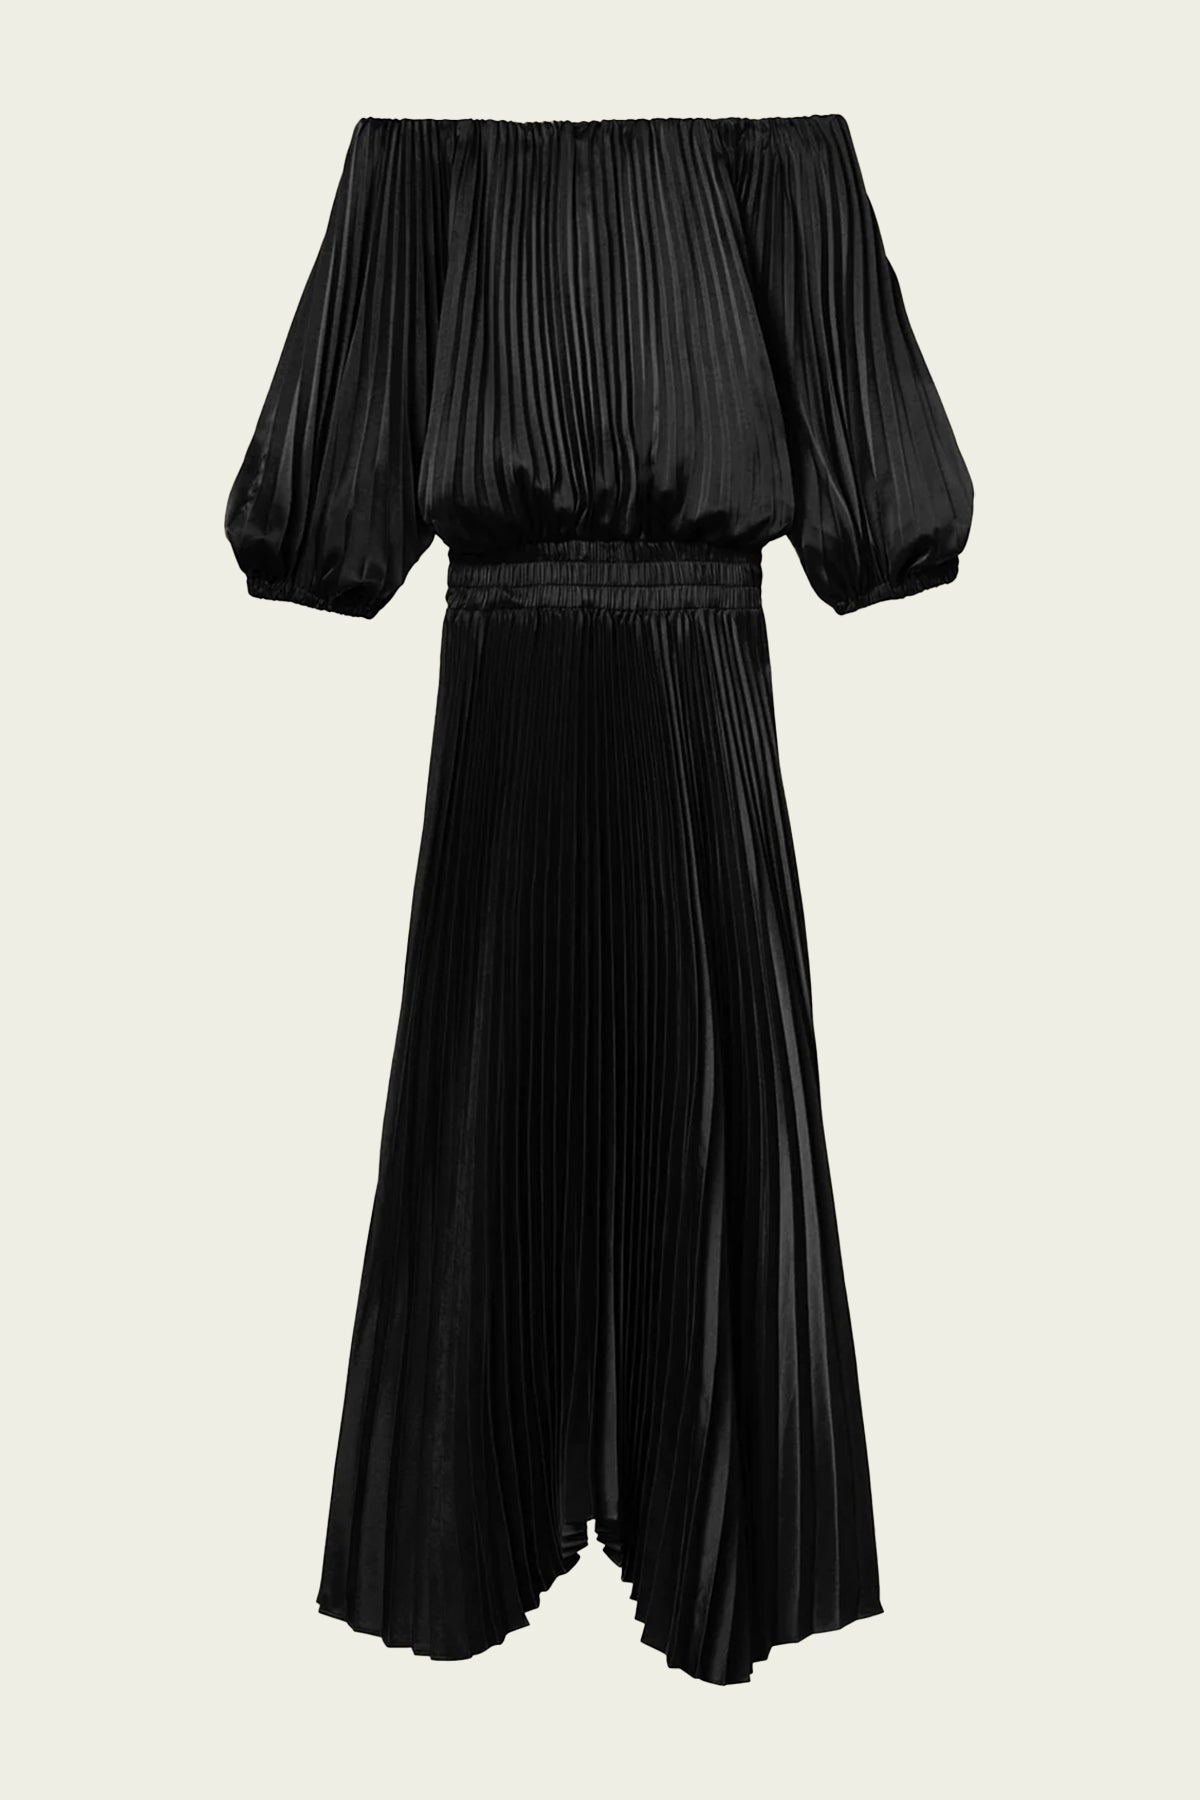 Sienna Satin Pleated Off Shoulder Dress in Black - shop-olivia.com